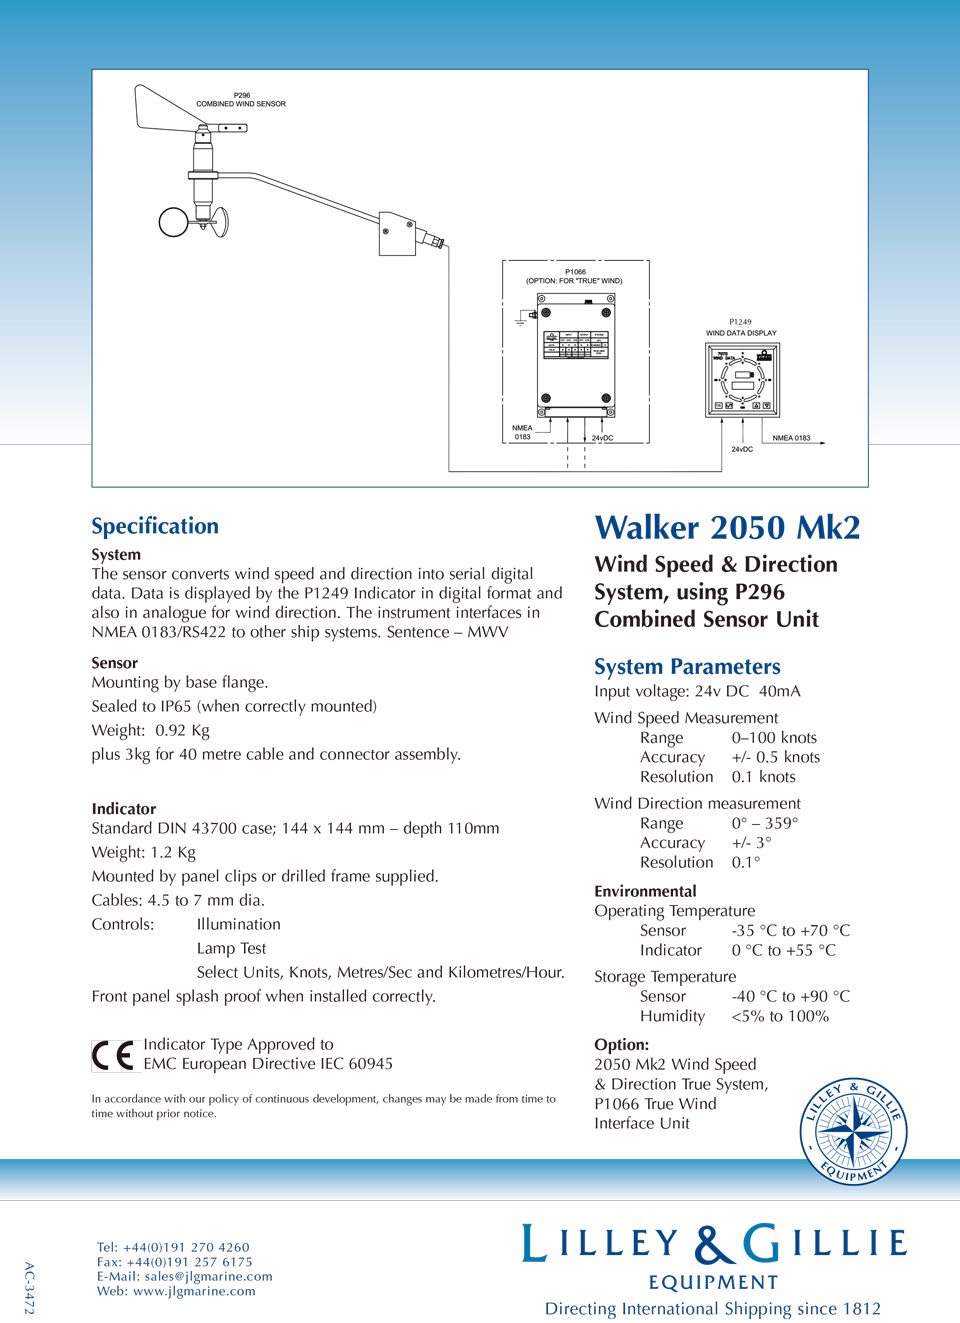 Walker 2050 Mk2